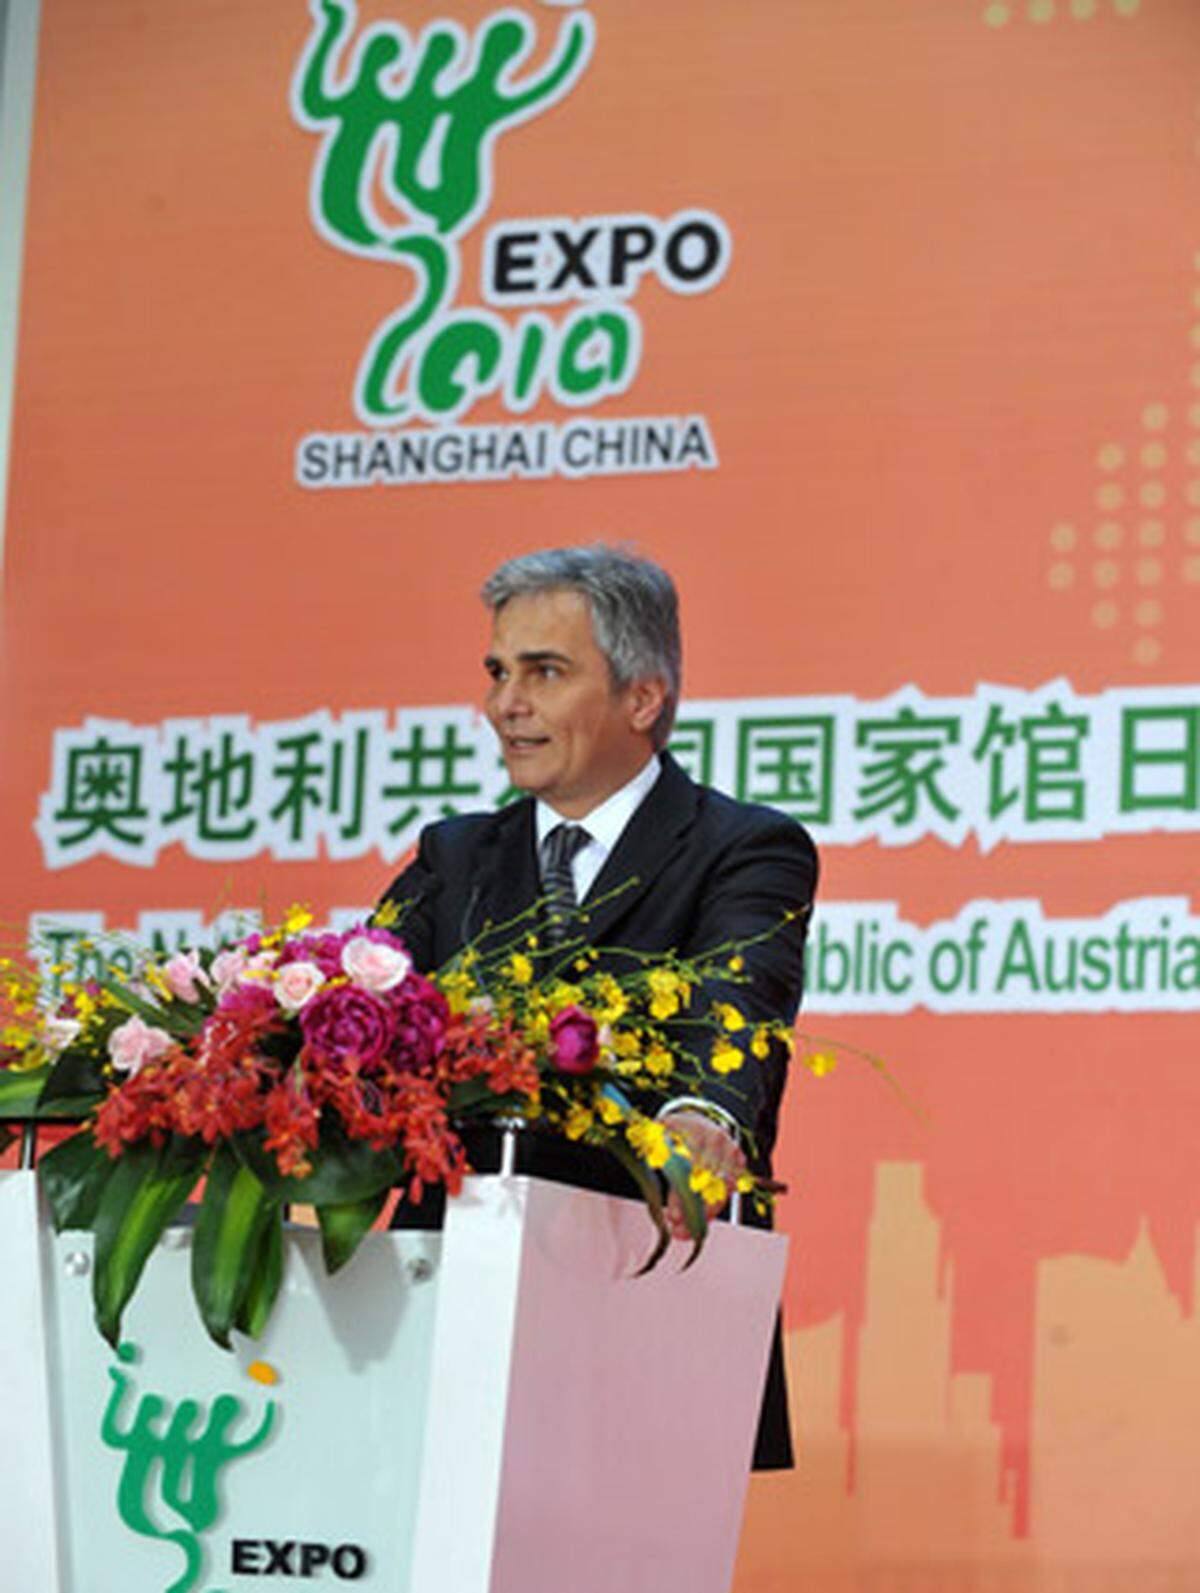 Der SPÖ-Kanzler aus Österreich beziehungsweise "Aodili" bewirbt in seiner Rede am Expo-Gelände die Vorzüge der Umwelttechnologie aus der Alpenrepublik, und dankt den chinesischen Bemühungen.